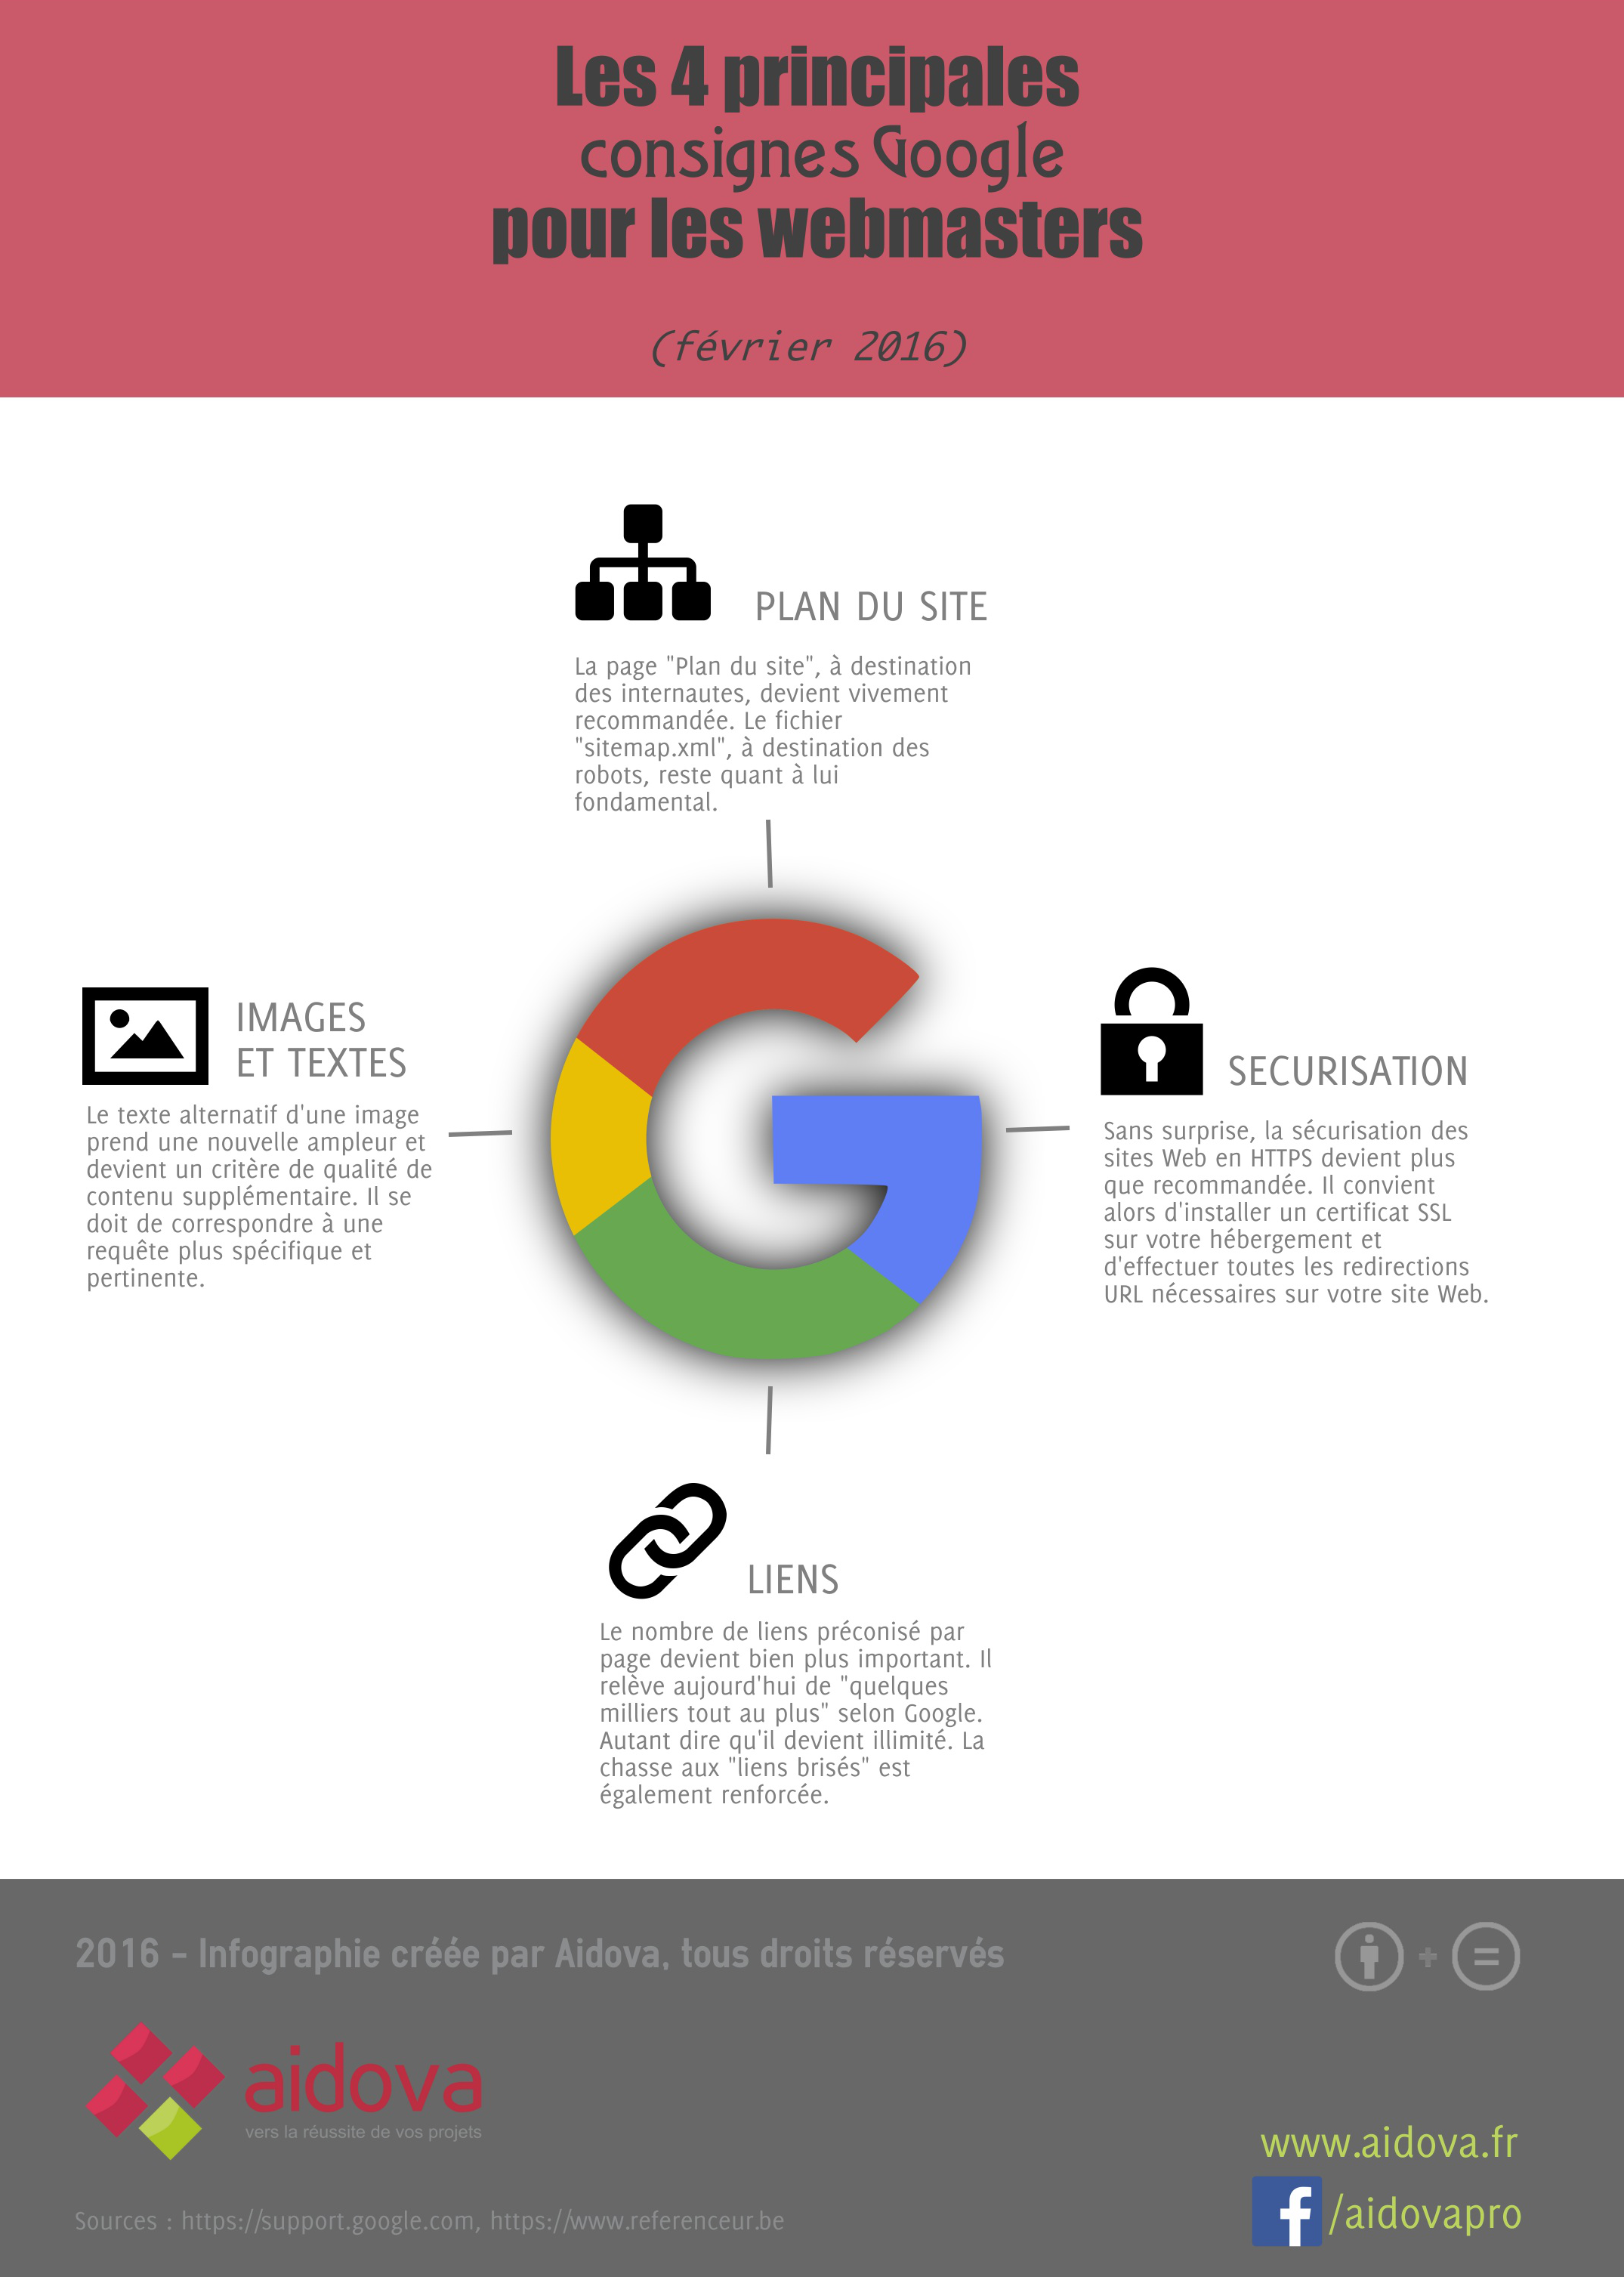 Infographie : les 4 principales consignes Google pour webmasters (février 2016)